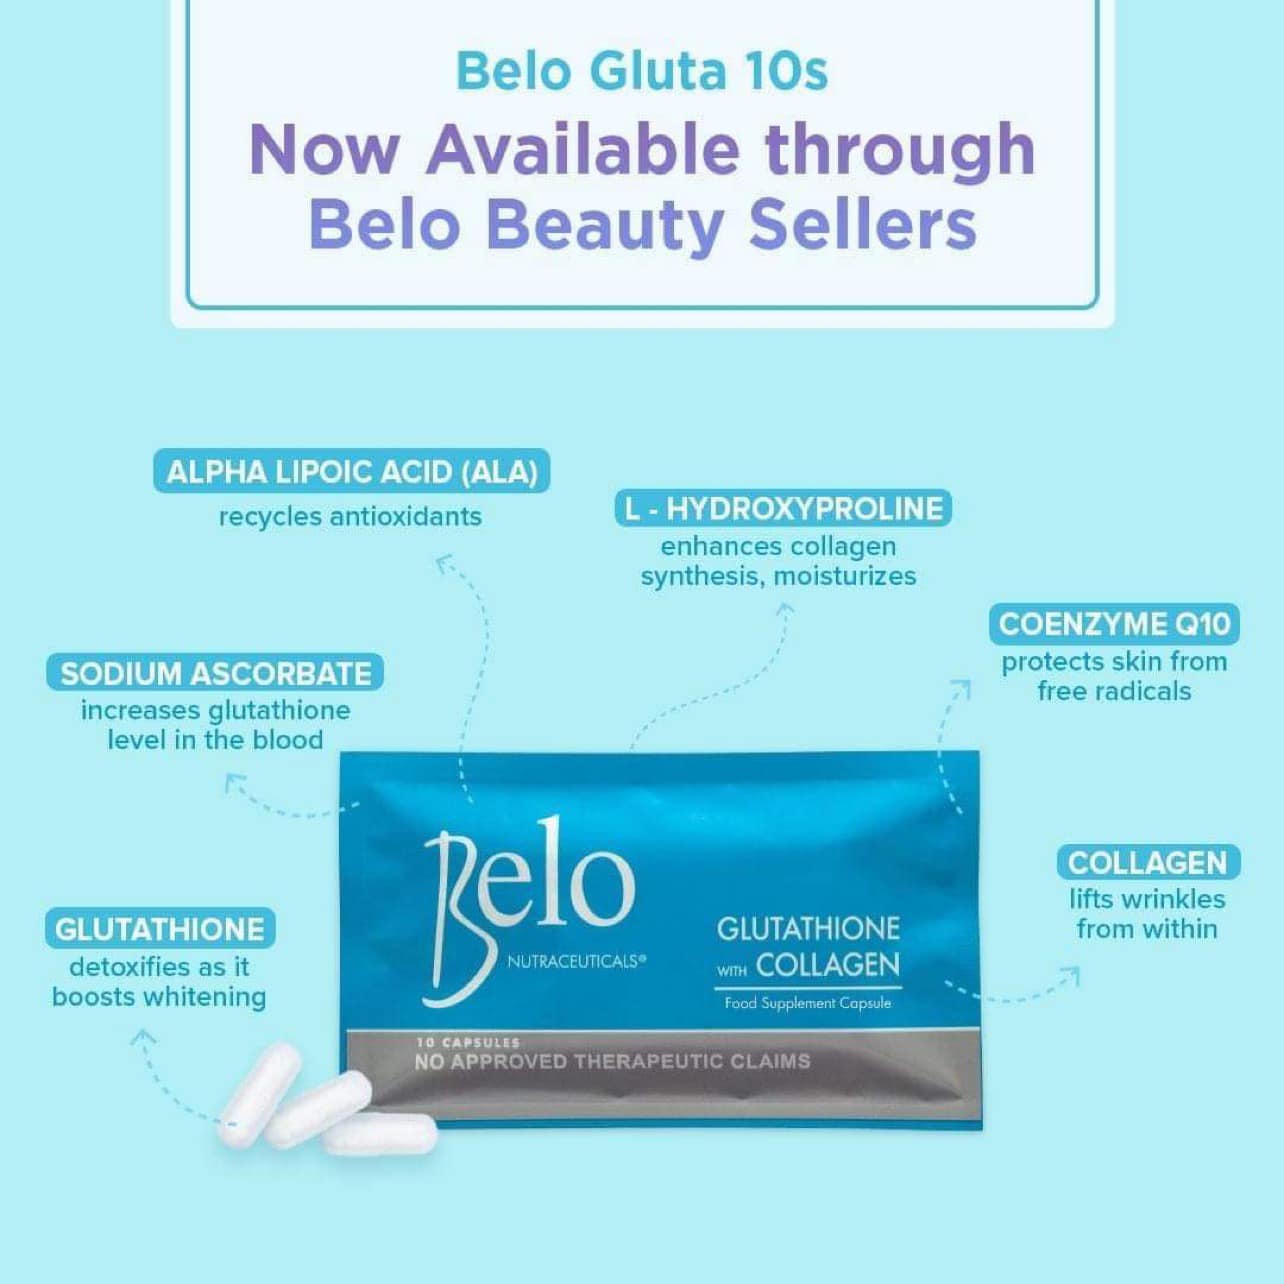 Belo Gluthathione with Collagen